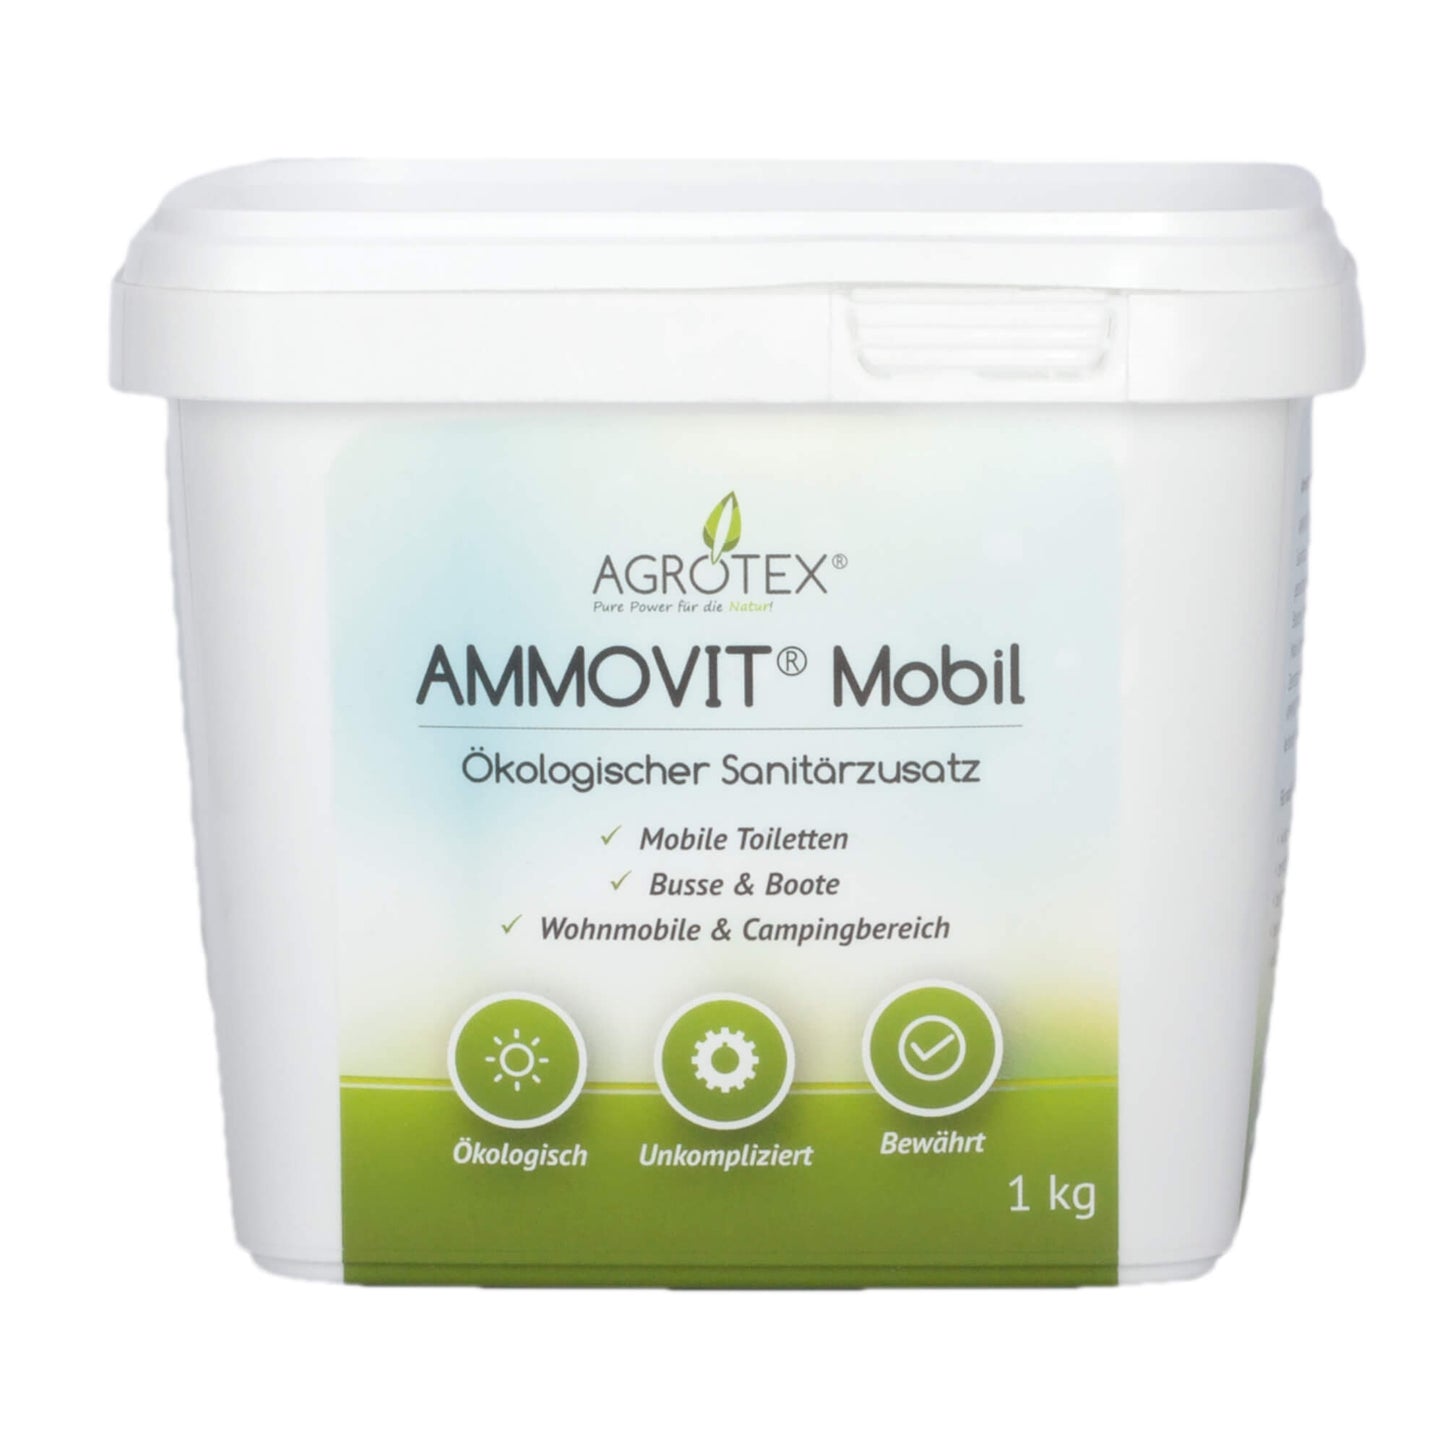 AMMOVIT Mobil 1 kg Eimer